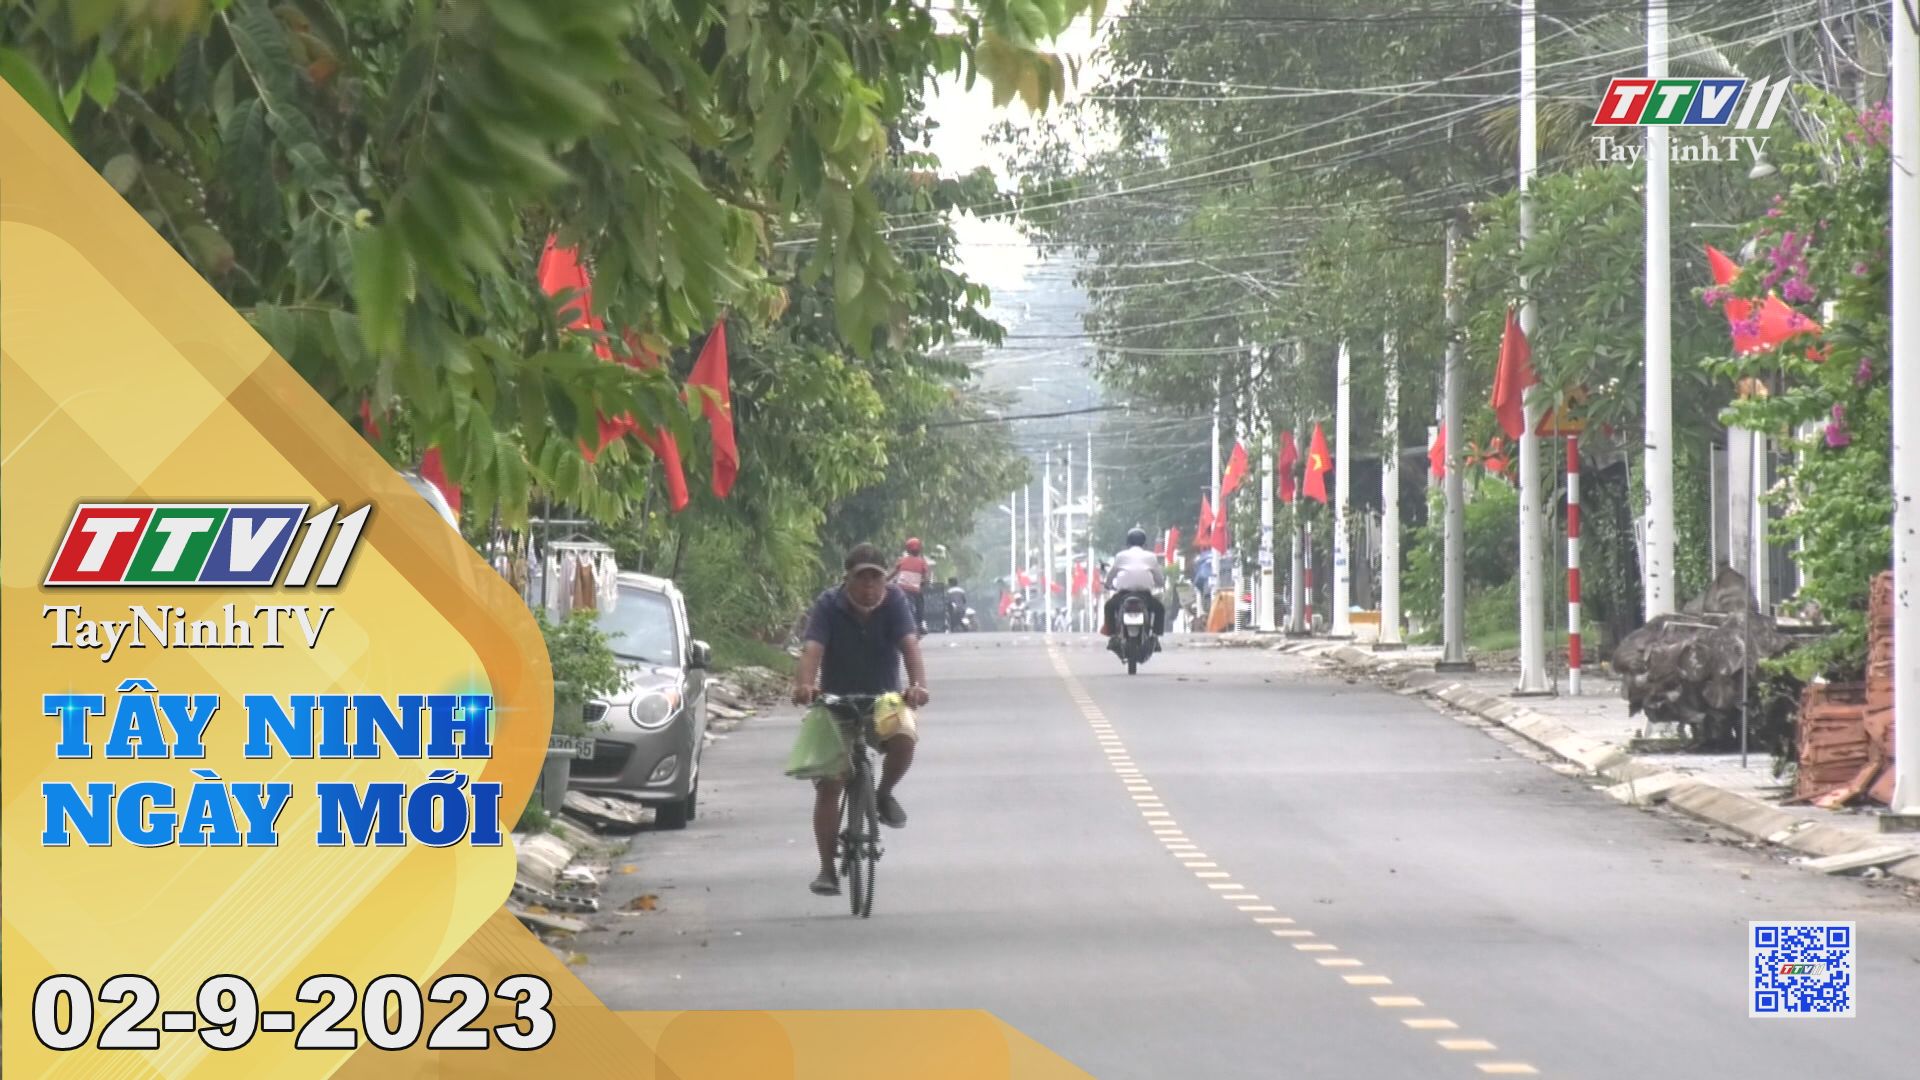 Tây Ninh ngày mới 02-9-2023 | Tin tức hôm nay | TayNinhTV